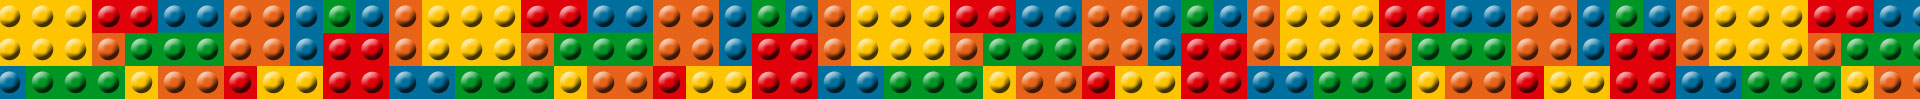 Lego Life, una app para compartir tus creaciones de Lego